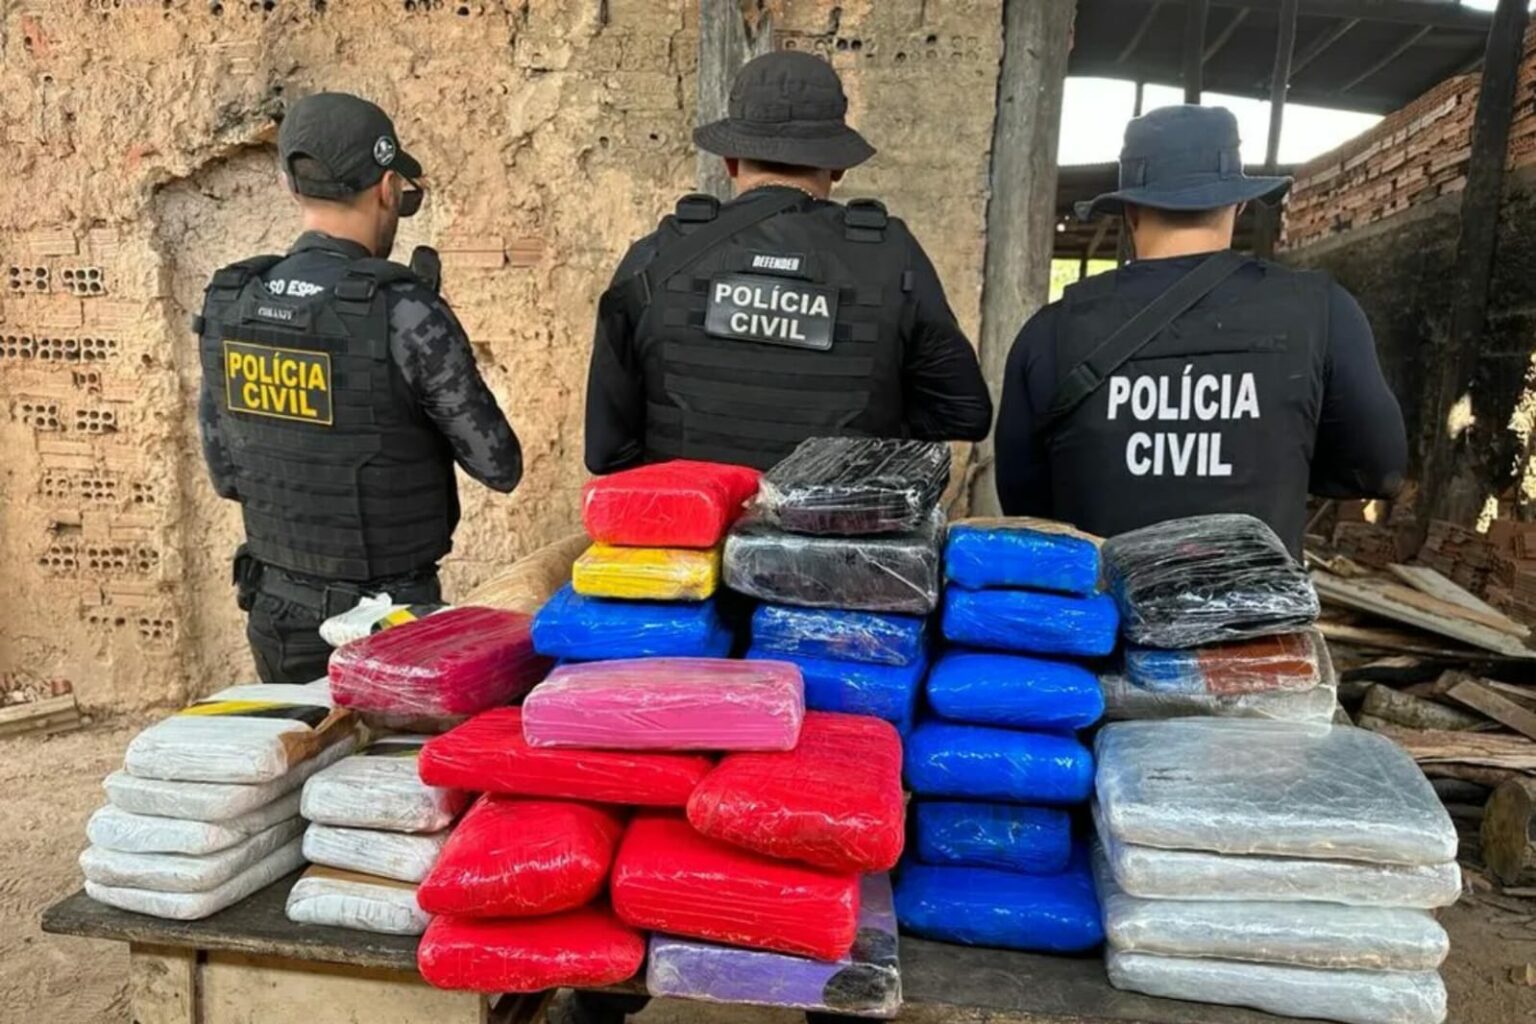 Polícia Civil incinera mais de 84 kg de drogas no oeste do Pará